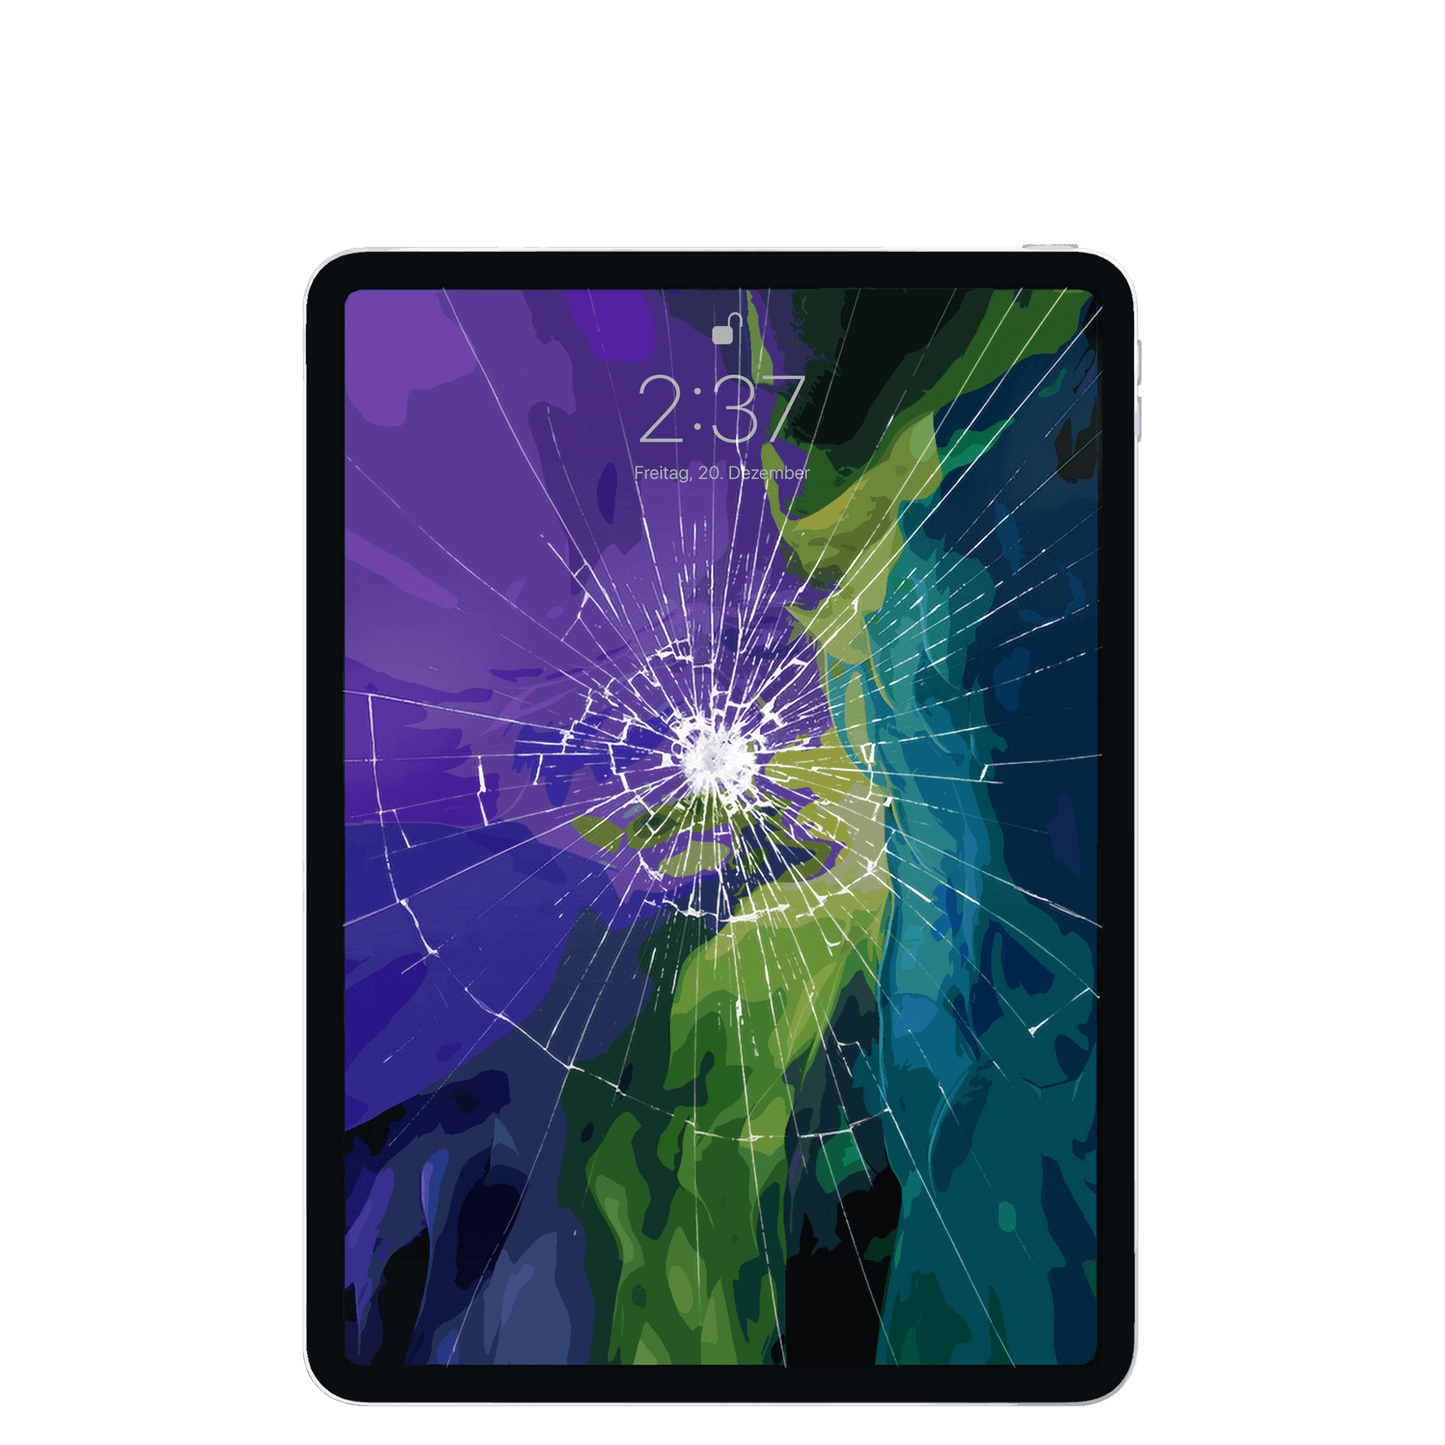 Zerkratztes Display des Apple iPad Pro der vierten Generation